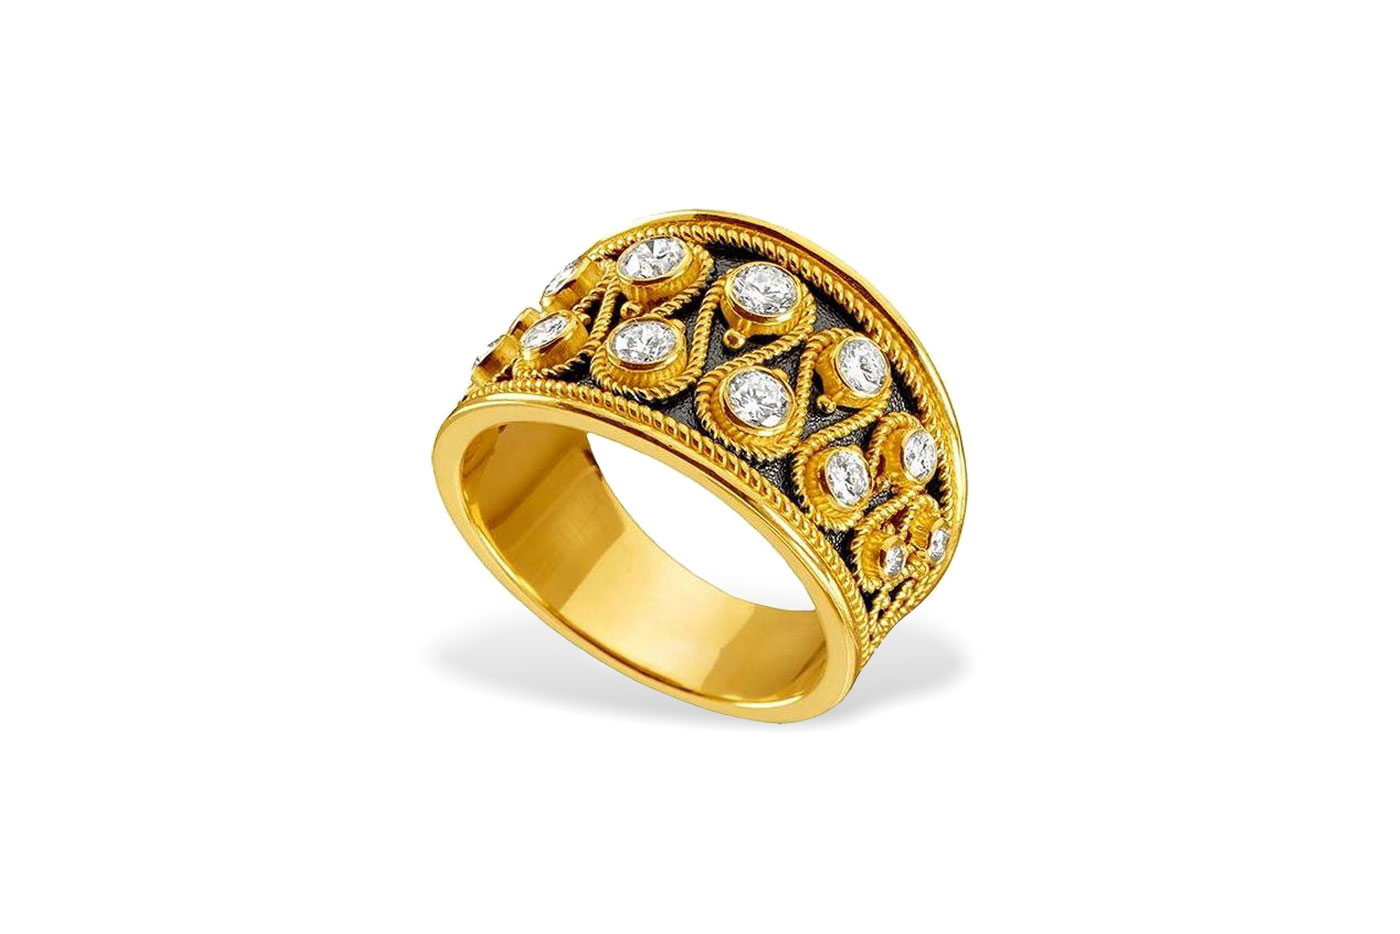 shop online byzantine jewelry